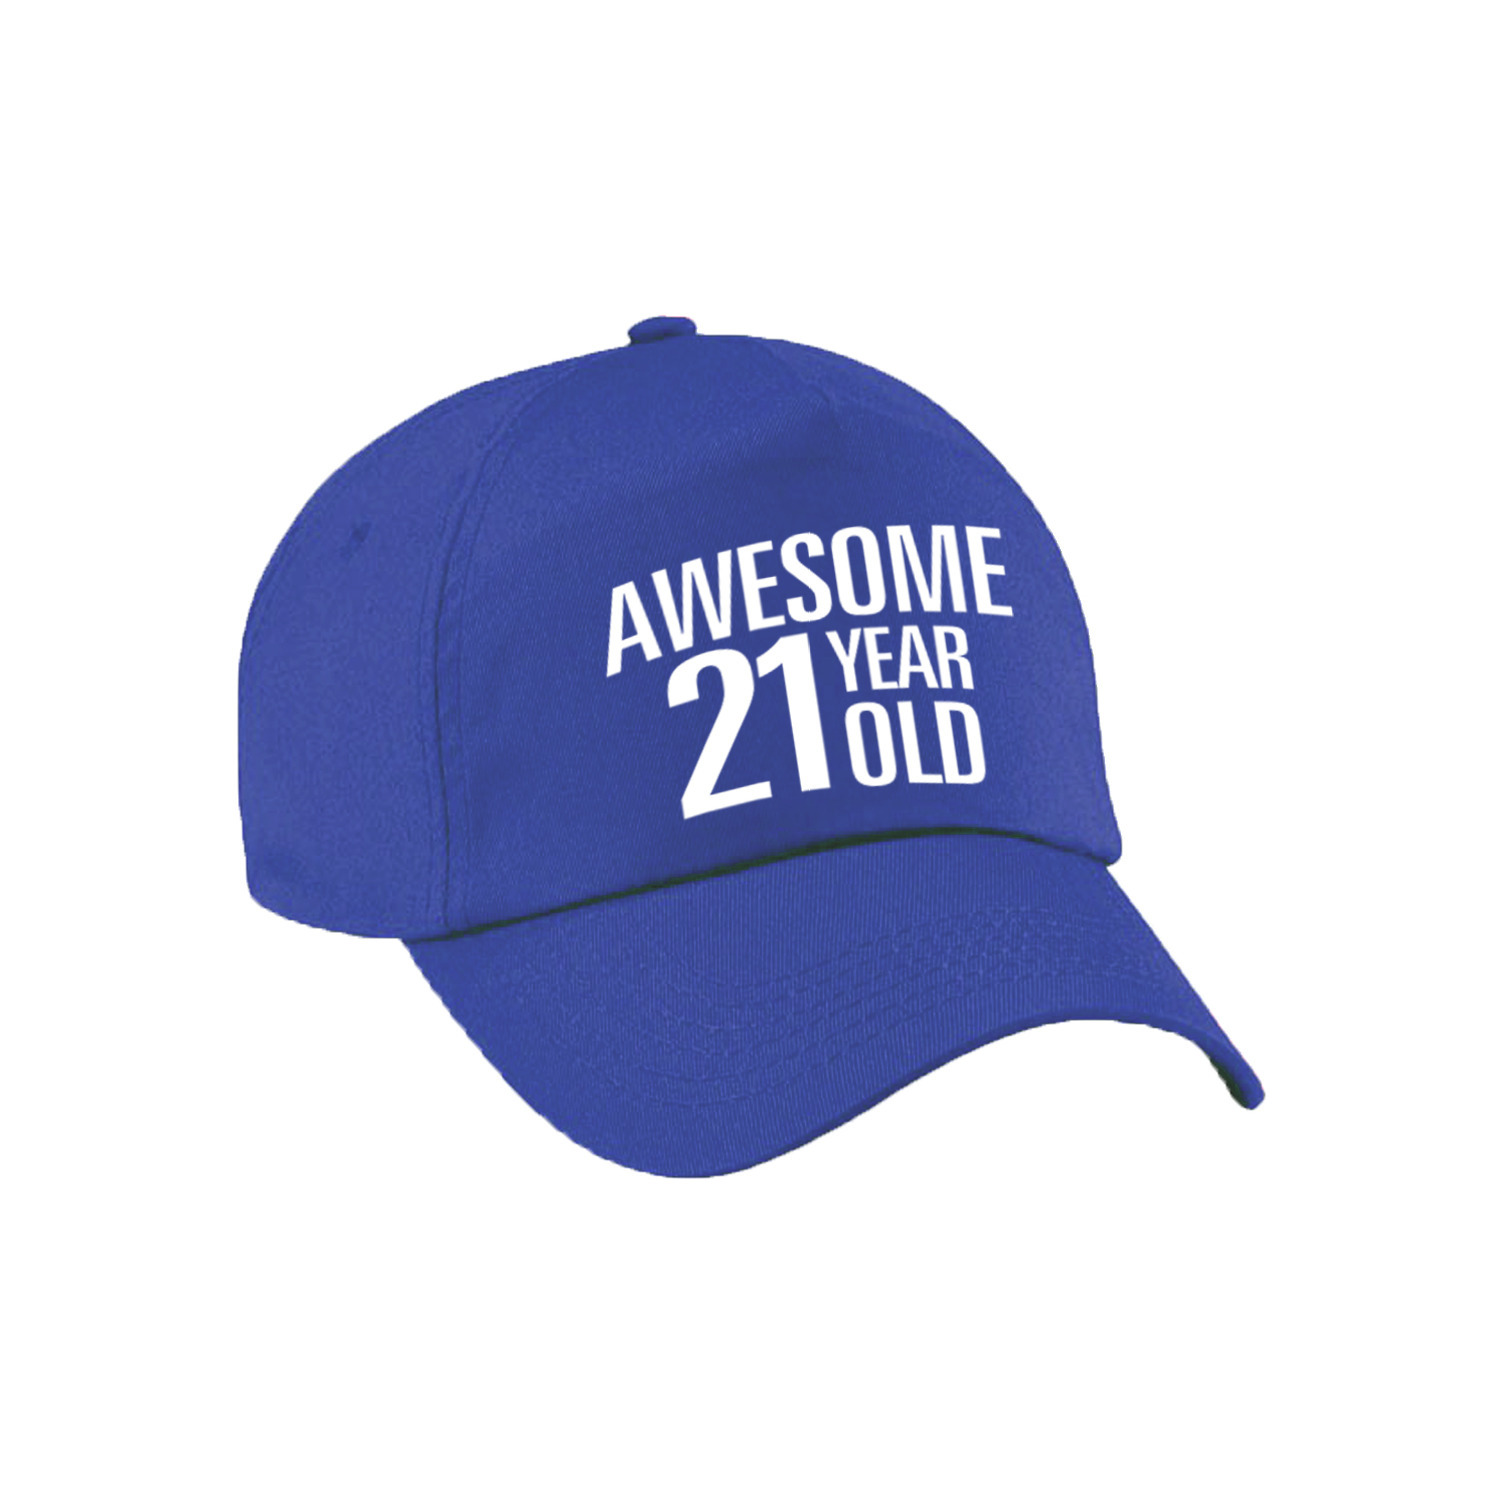 Awesome 21 year old verjaardag pet-cap blauw voor dames en heren